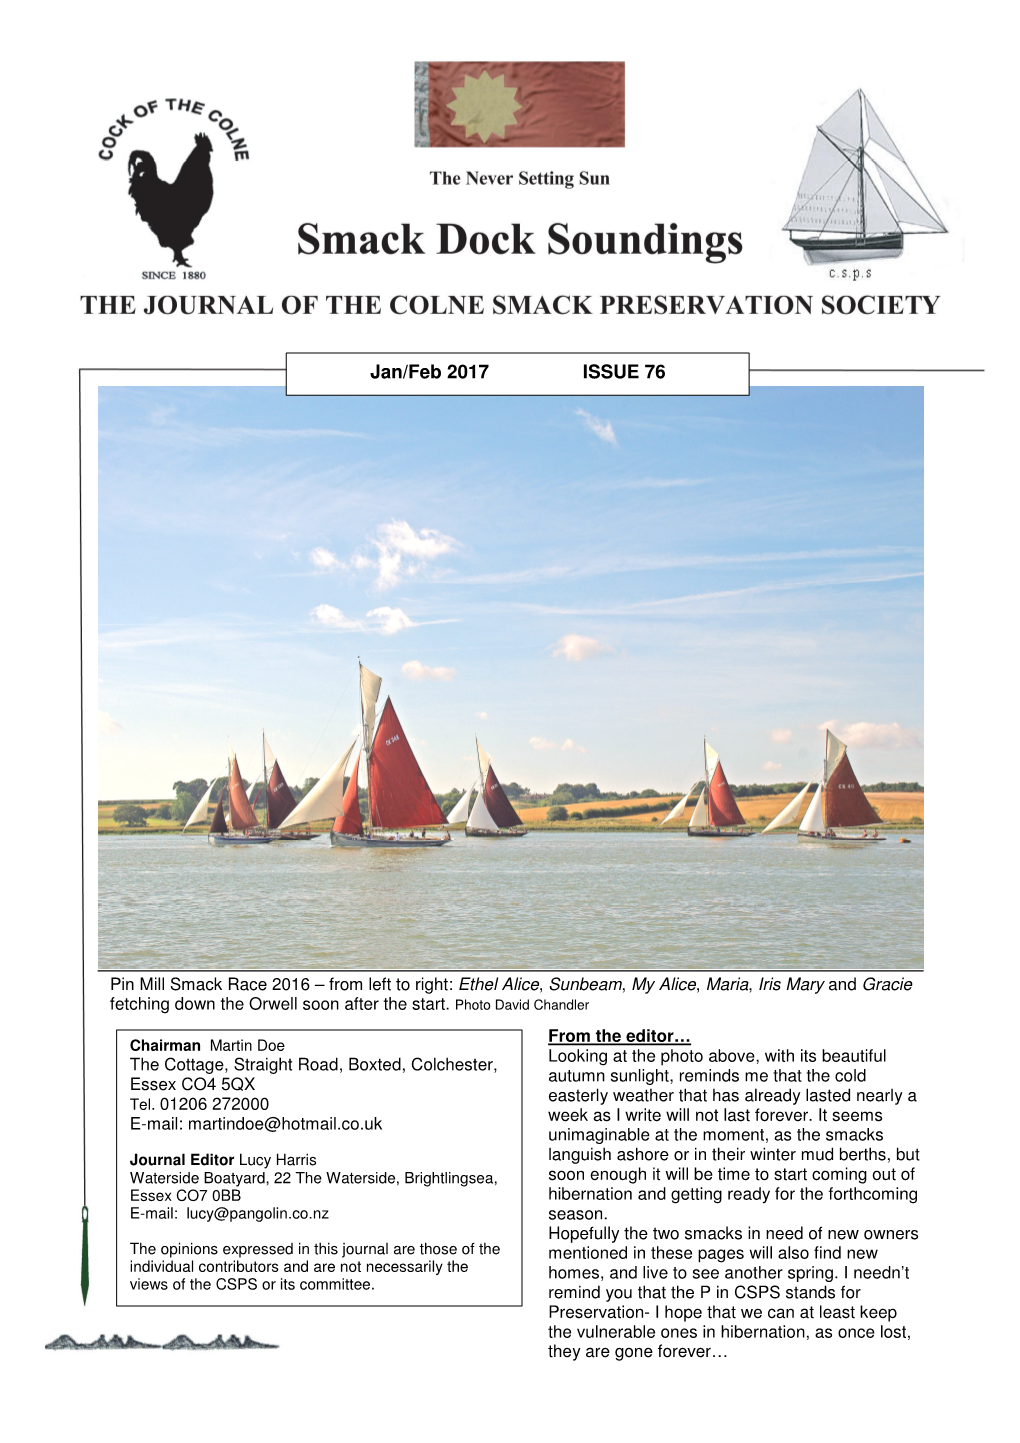 Smack Dock Soundings Jan/Feb 2017 ISSUE 76